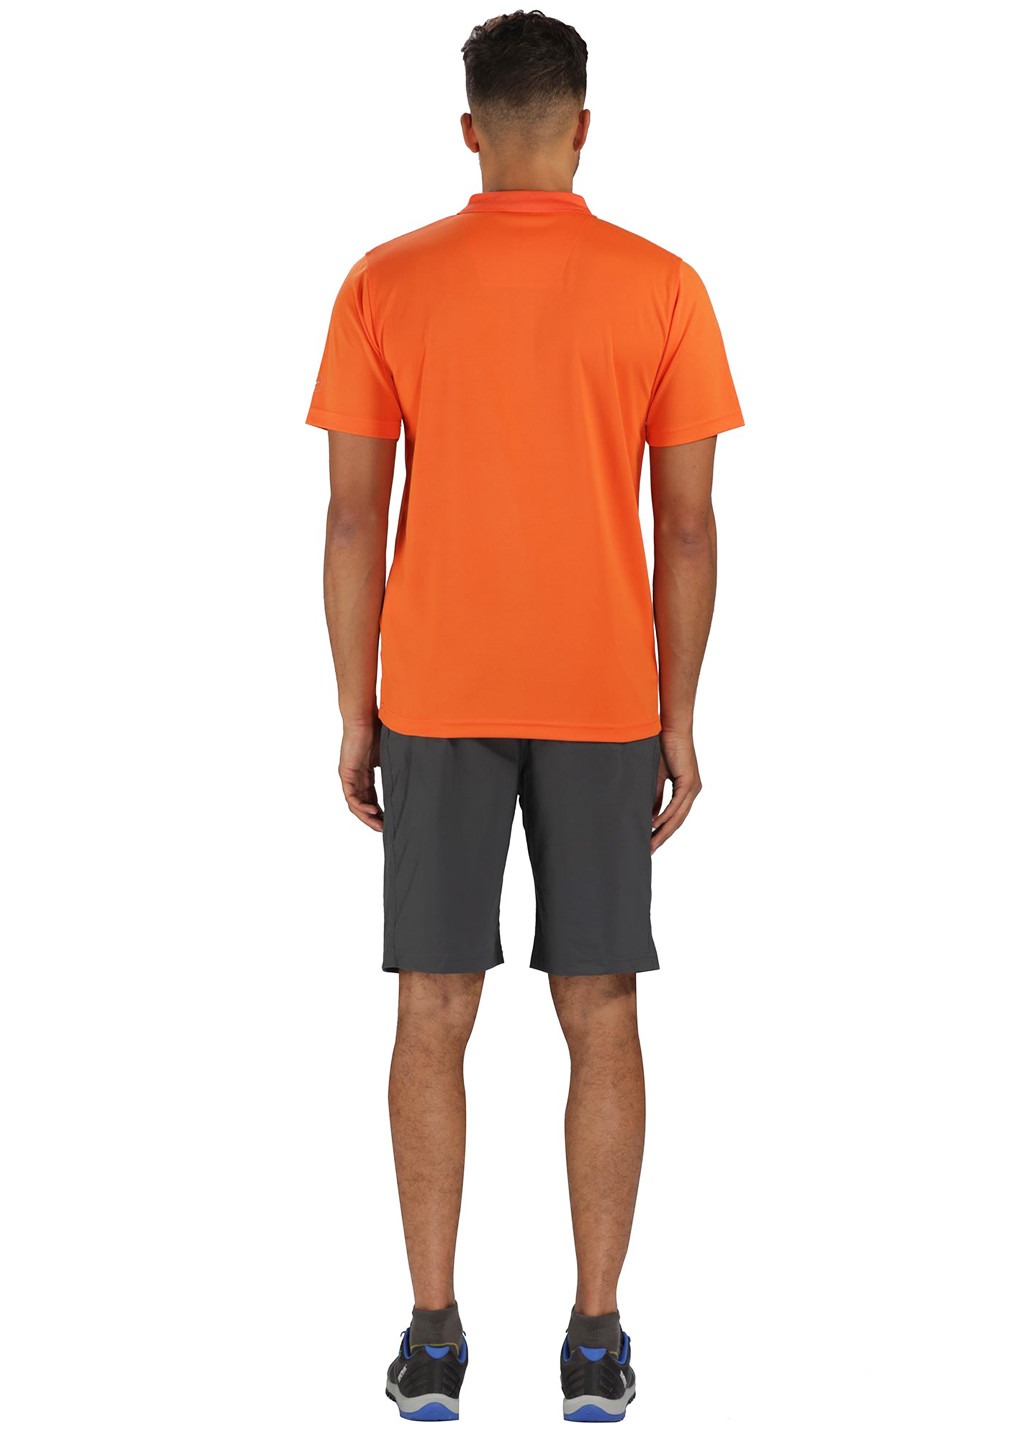 Оранжевая футболка-поло для мужчин Regatta с надписью